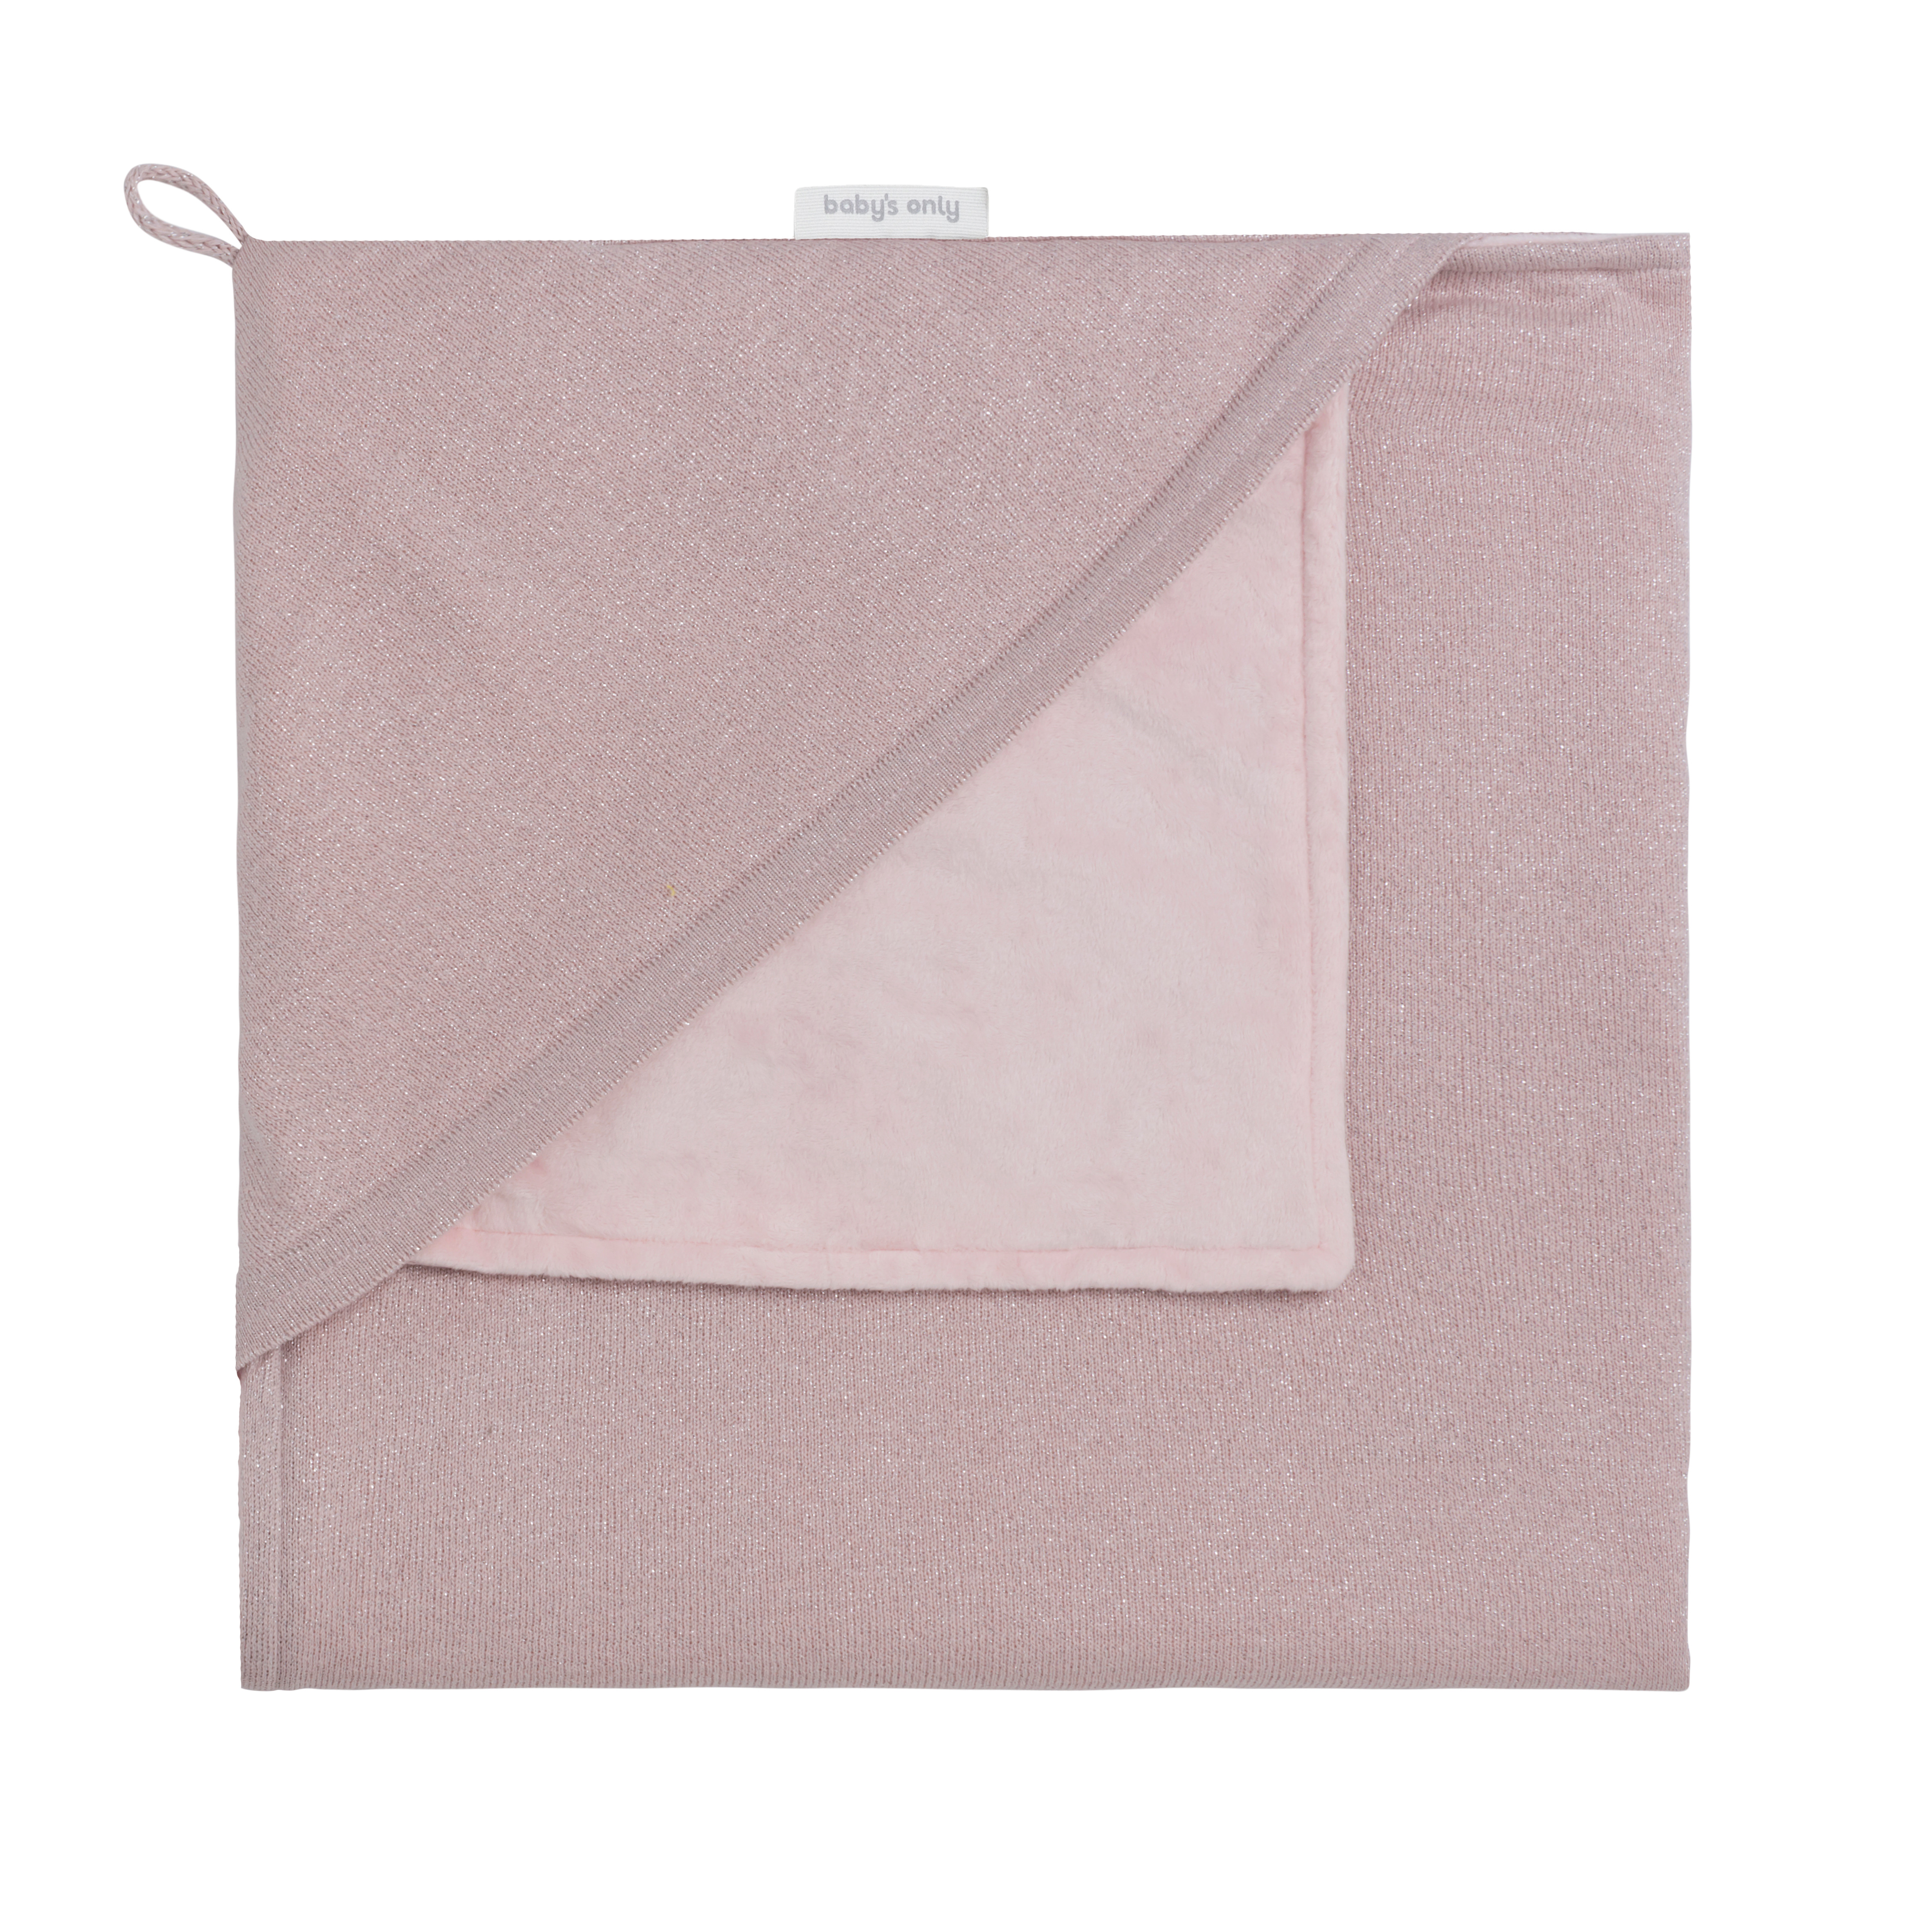 Couverture enveloppante soft Sparkle rose-argent mêlé